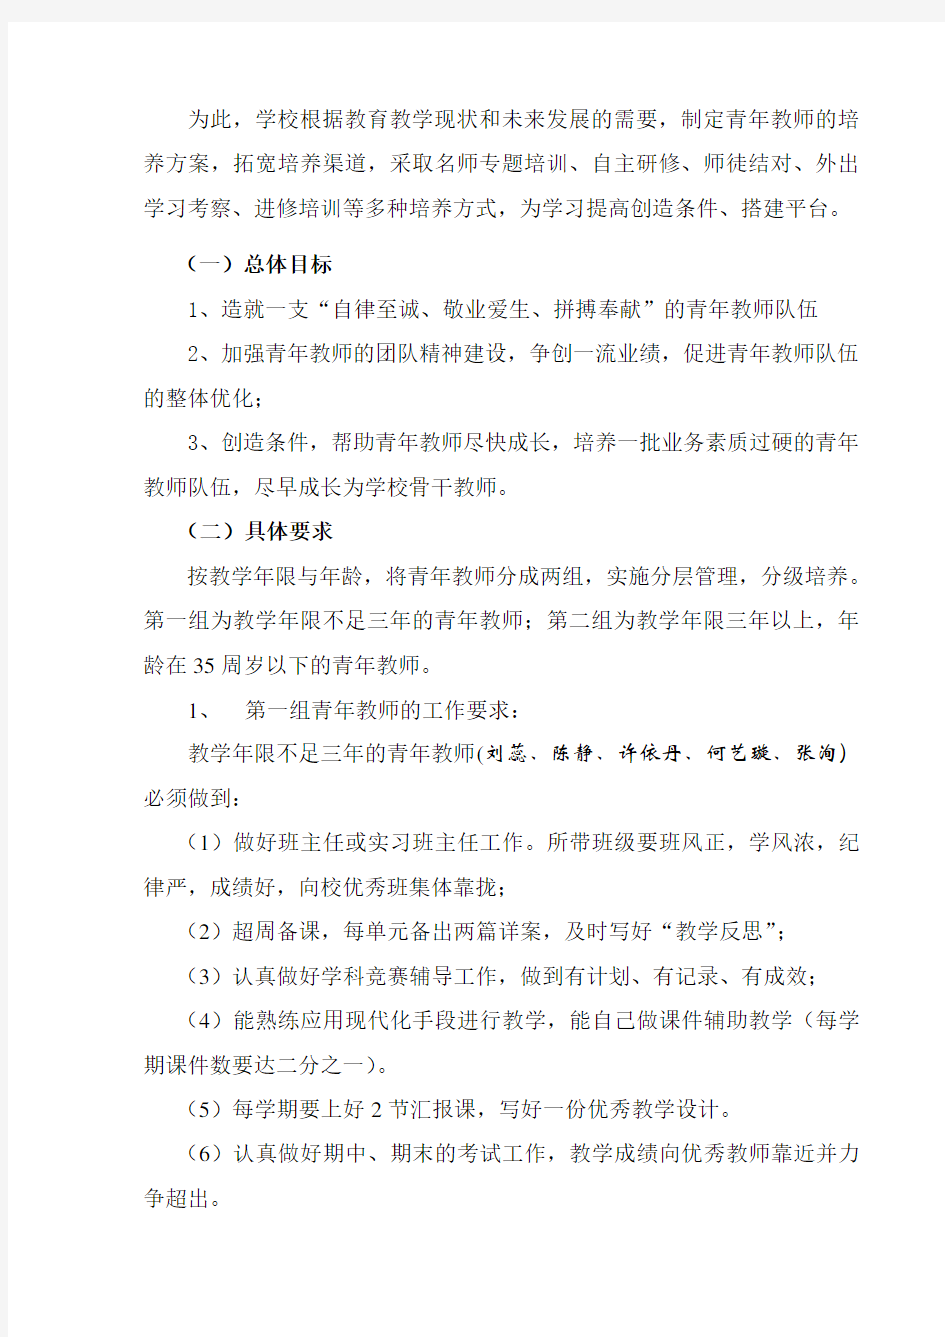 彩虹小学青年教师培养方案 2013-9-22